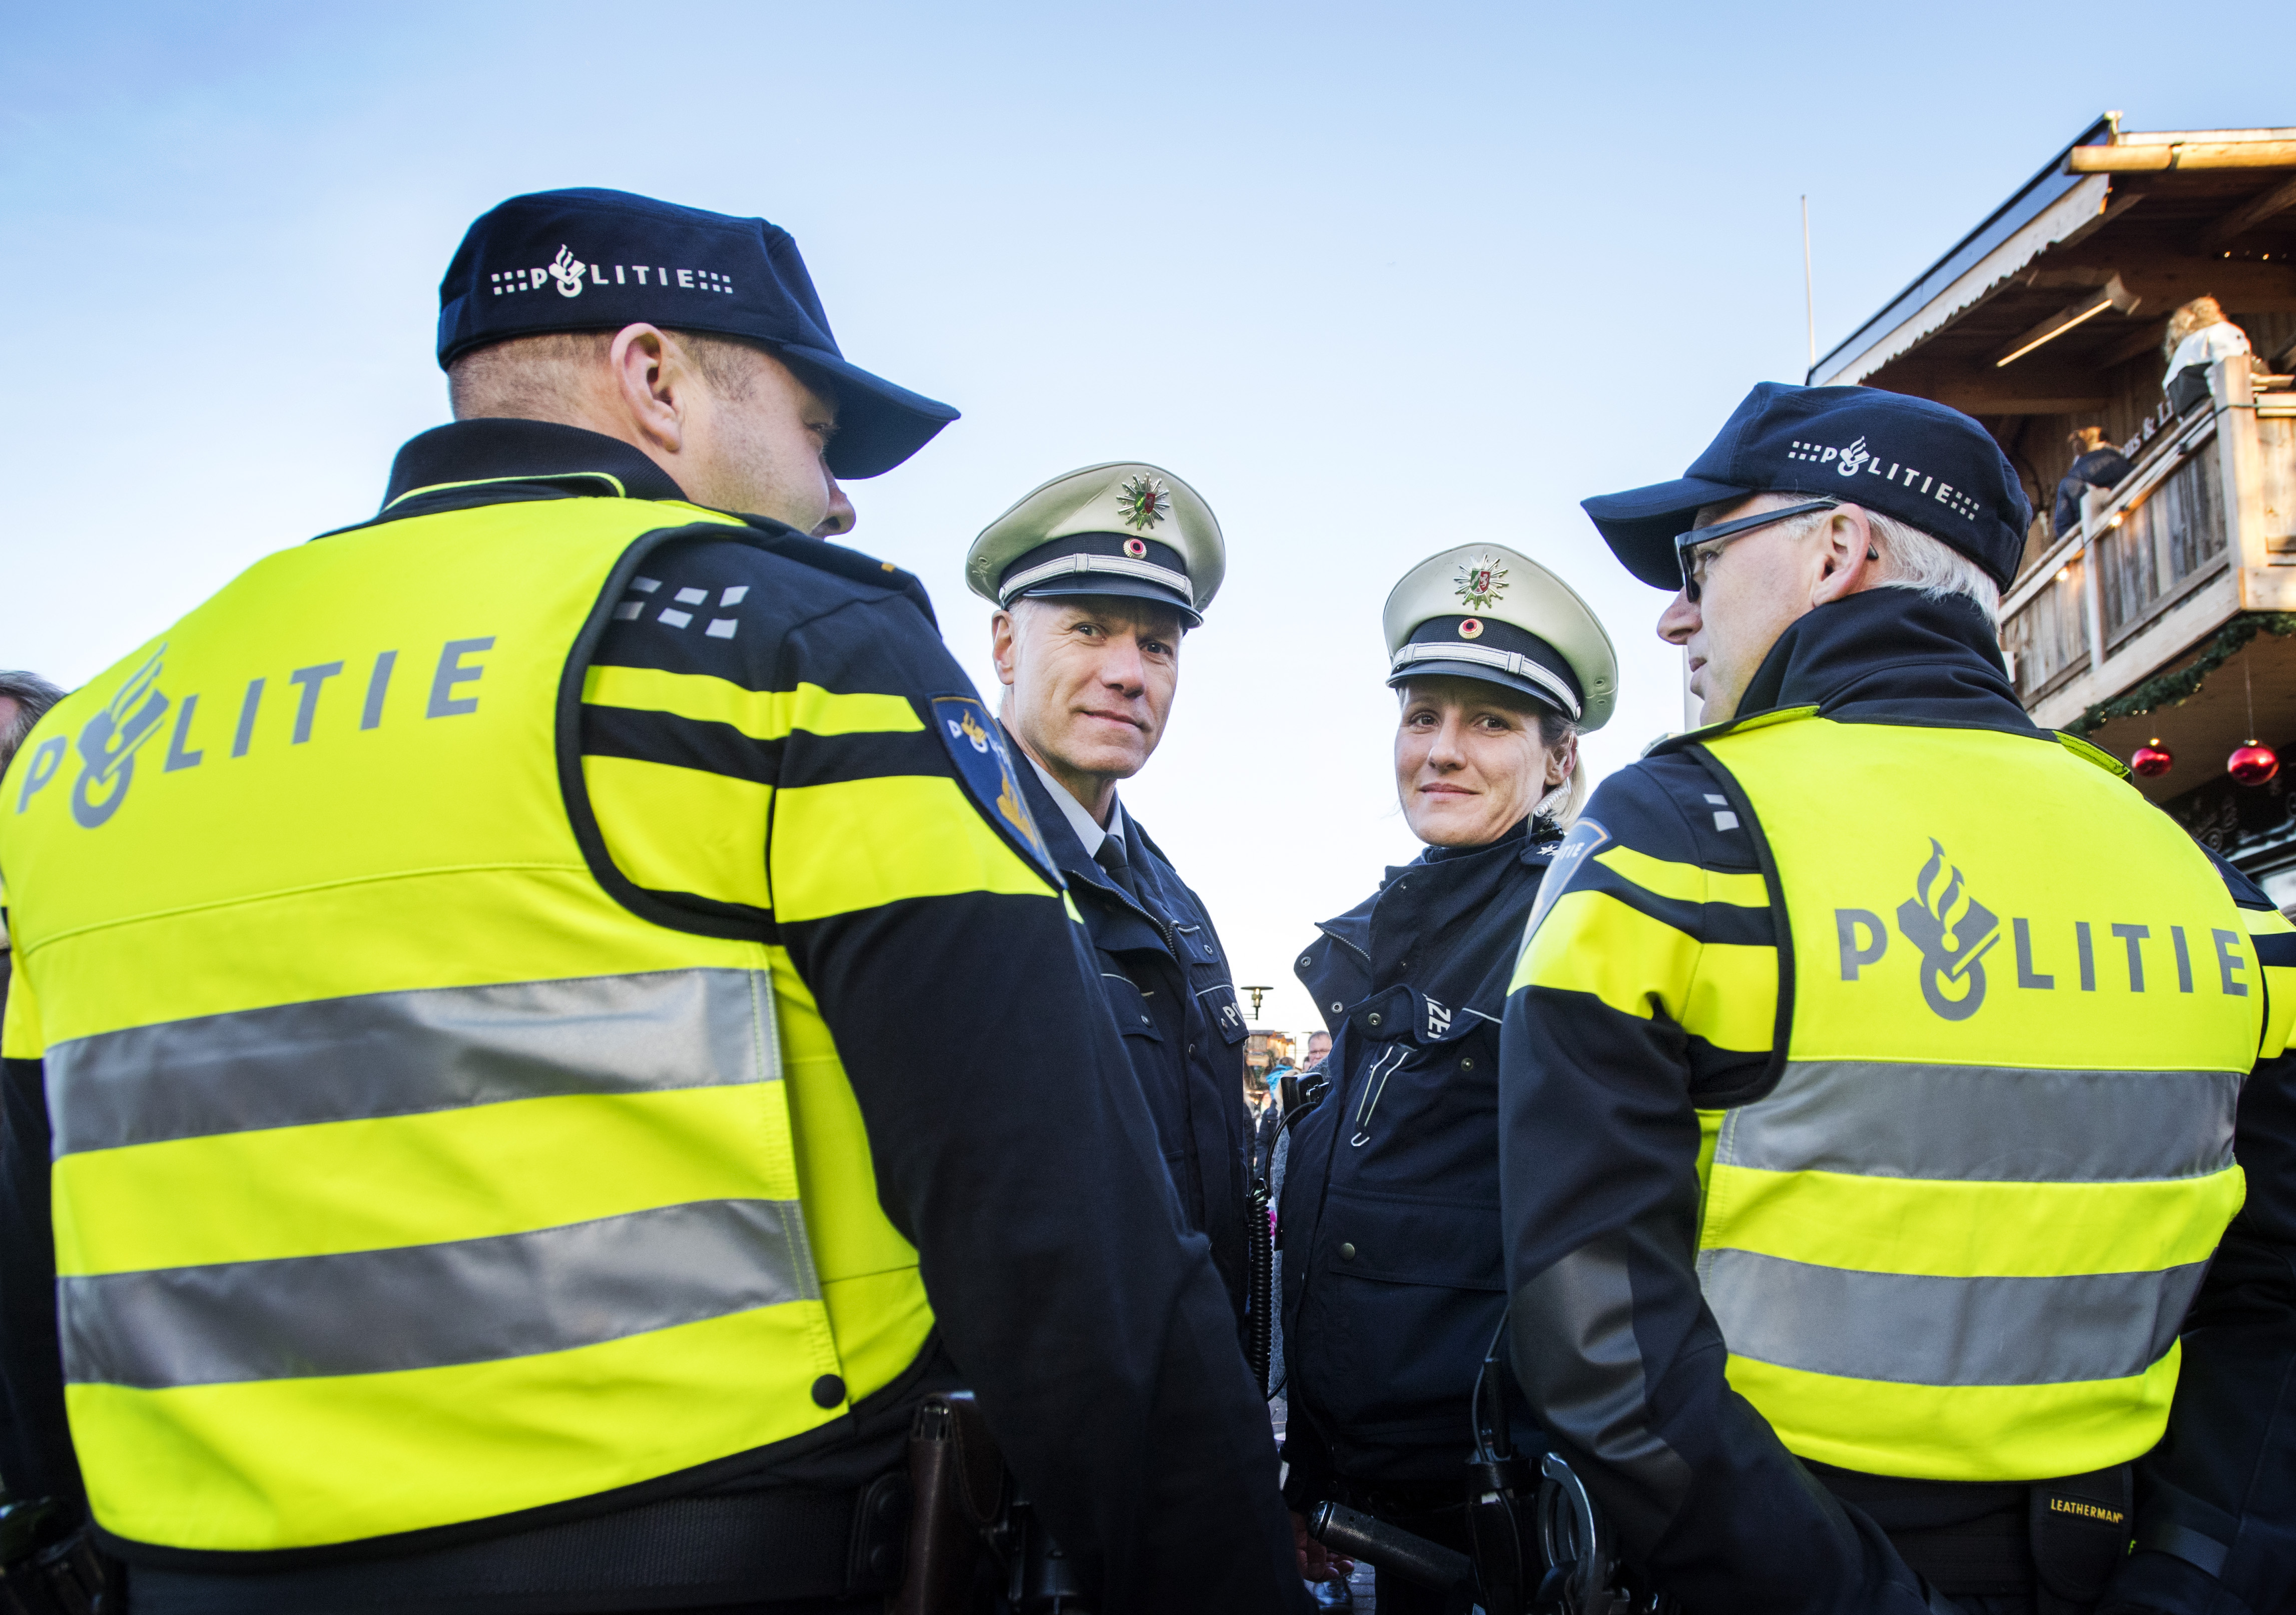 Politie wilde 33 duizend agenten nieuwe uniformen geven ...